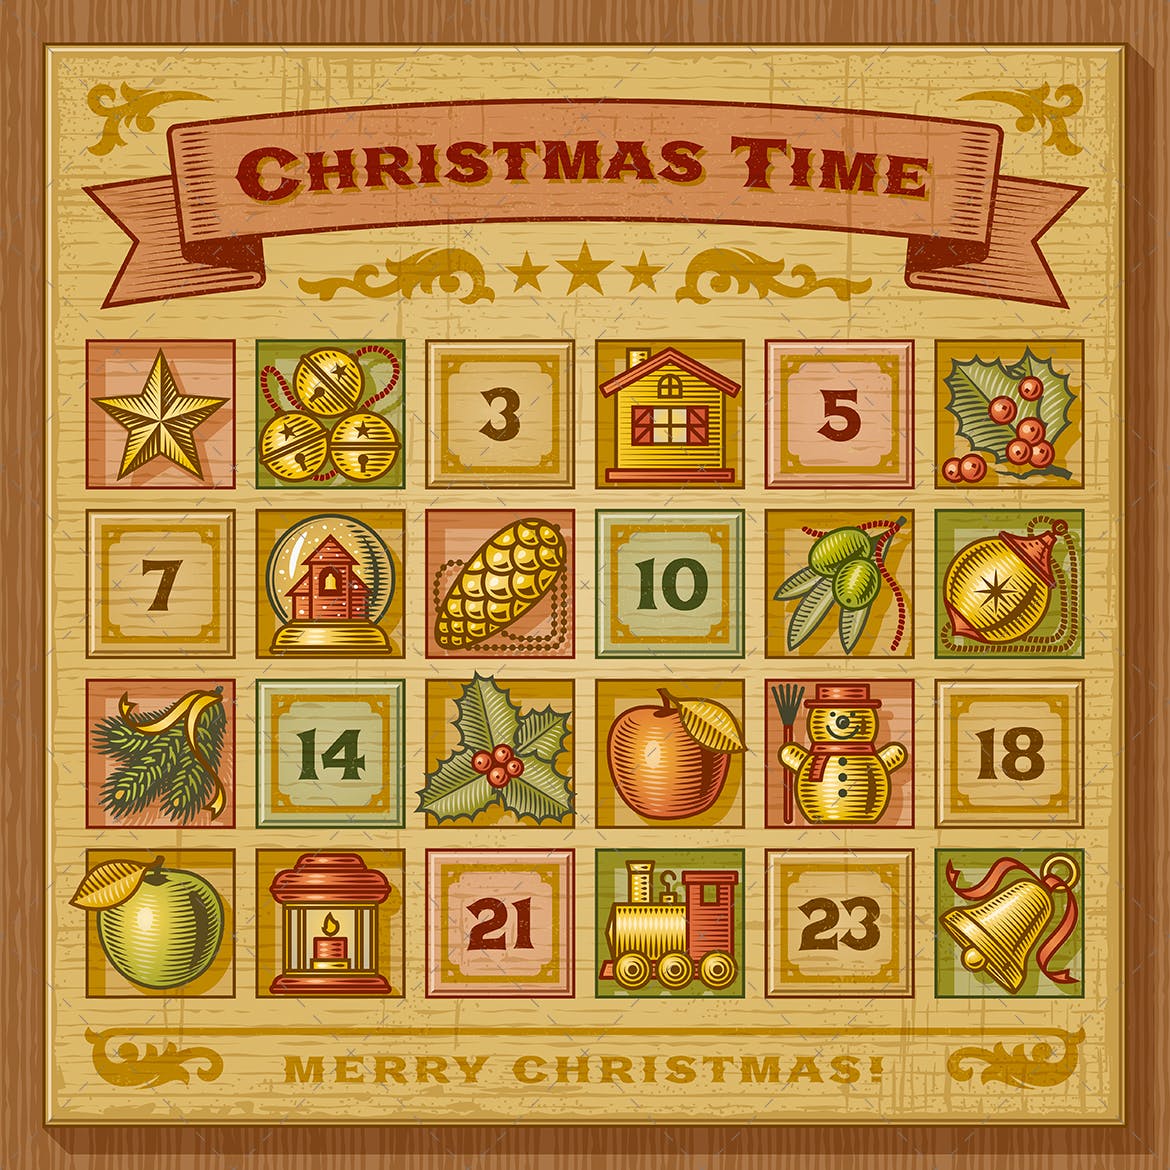 复古木刻风格圣诞节主题日历设计模板 Vintage Christmas Advent Calendar插图(1)